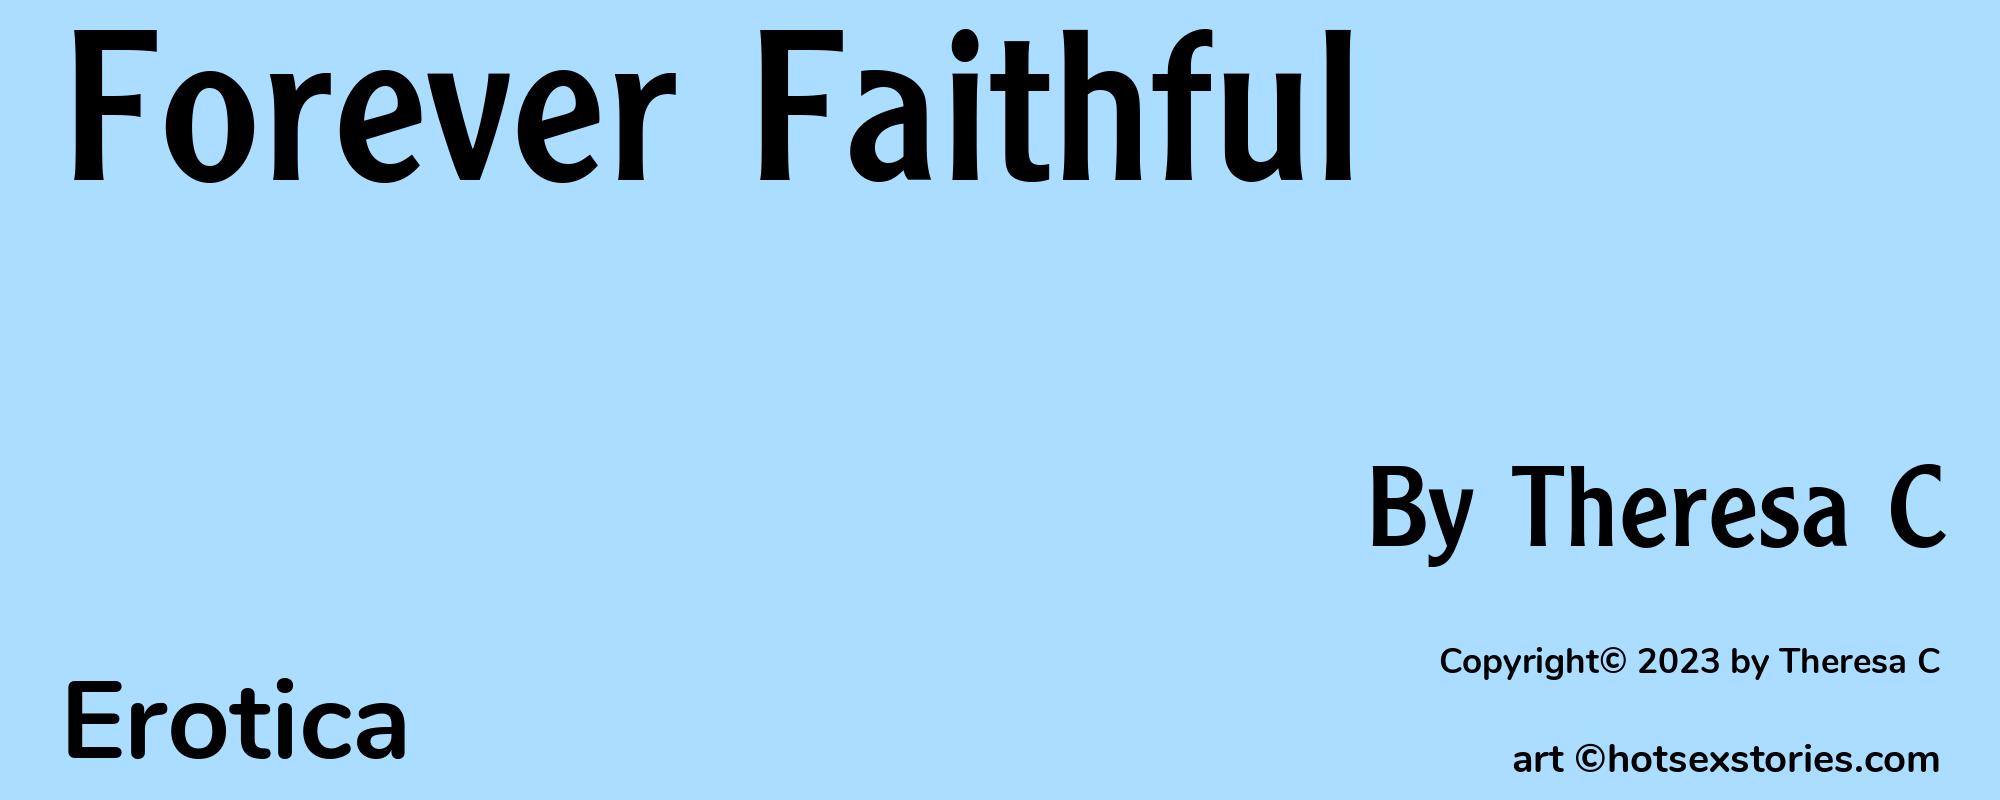 Forever Faithful - Cover